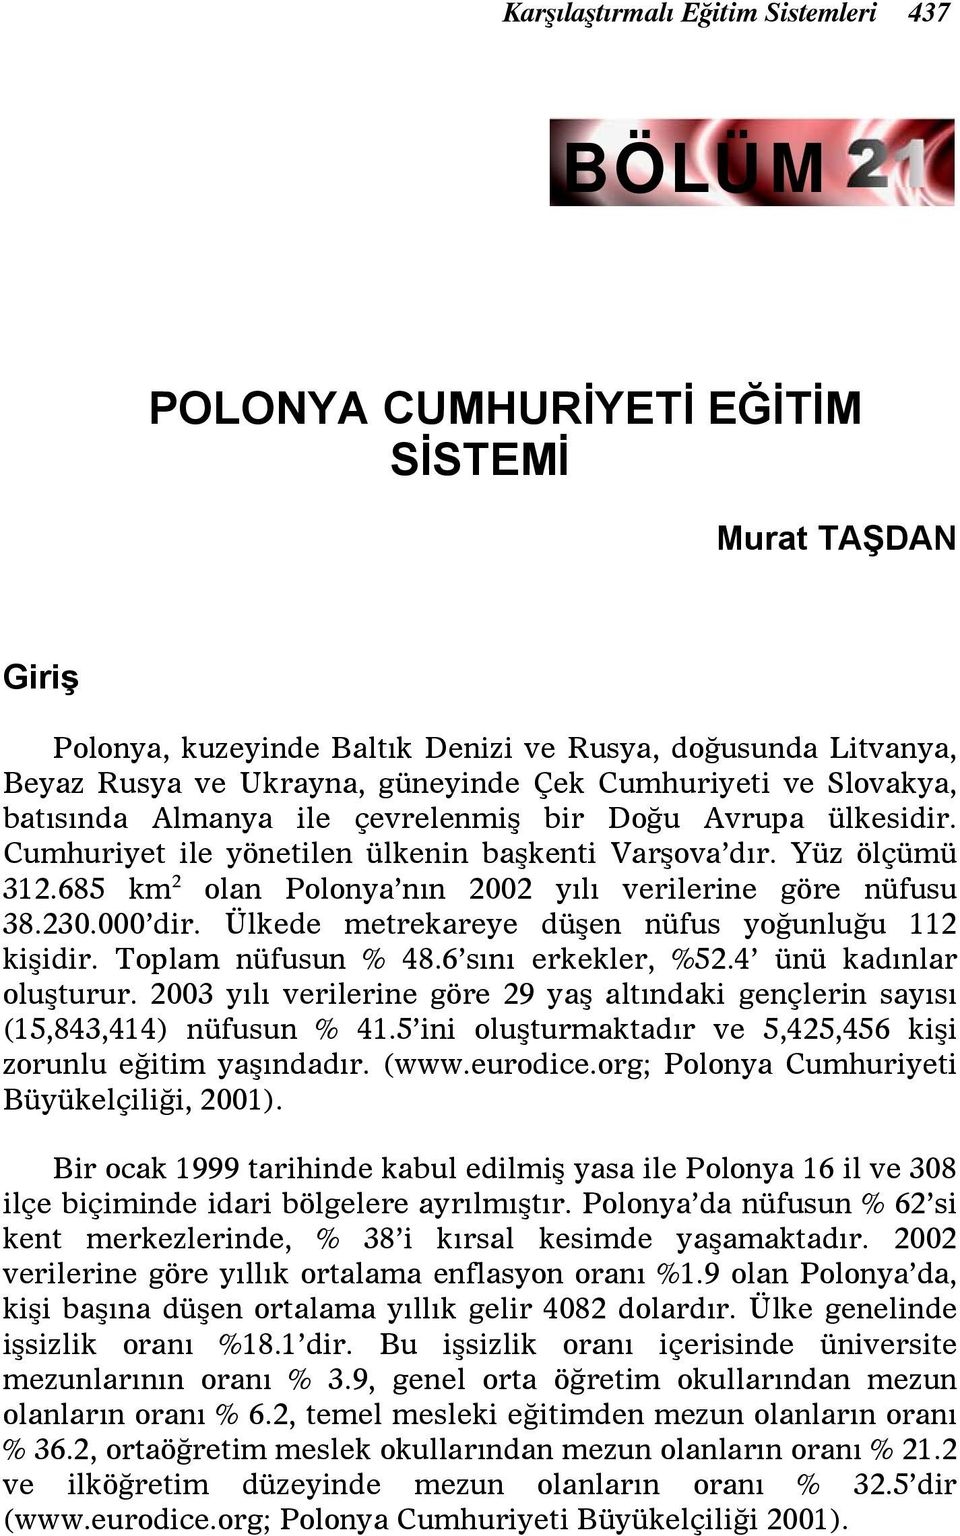 685 km 2 olan Polonya nın 2002 yılı verilerine göre nüfusu 38.230.000 dir. Ülkede metrekareye düşen nüfus yoğunluğu 112 kişidir. Toplam nüfusun % 48.6 sını erkekler, %52.4 ünü kadınlar oluşturur.